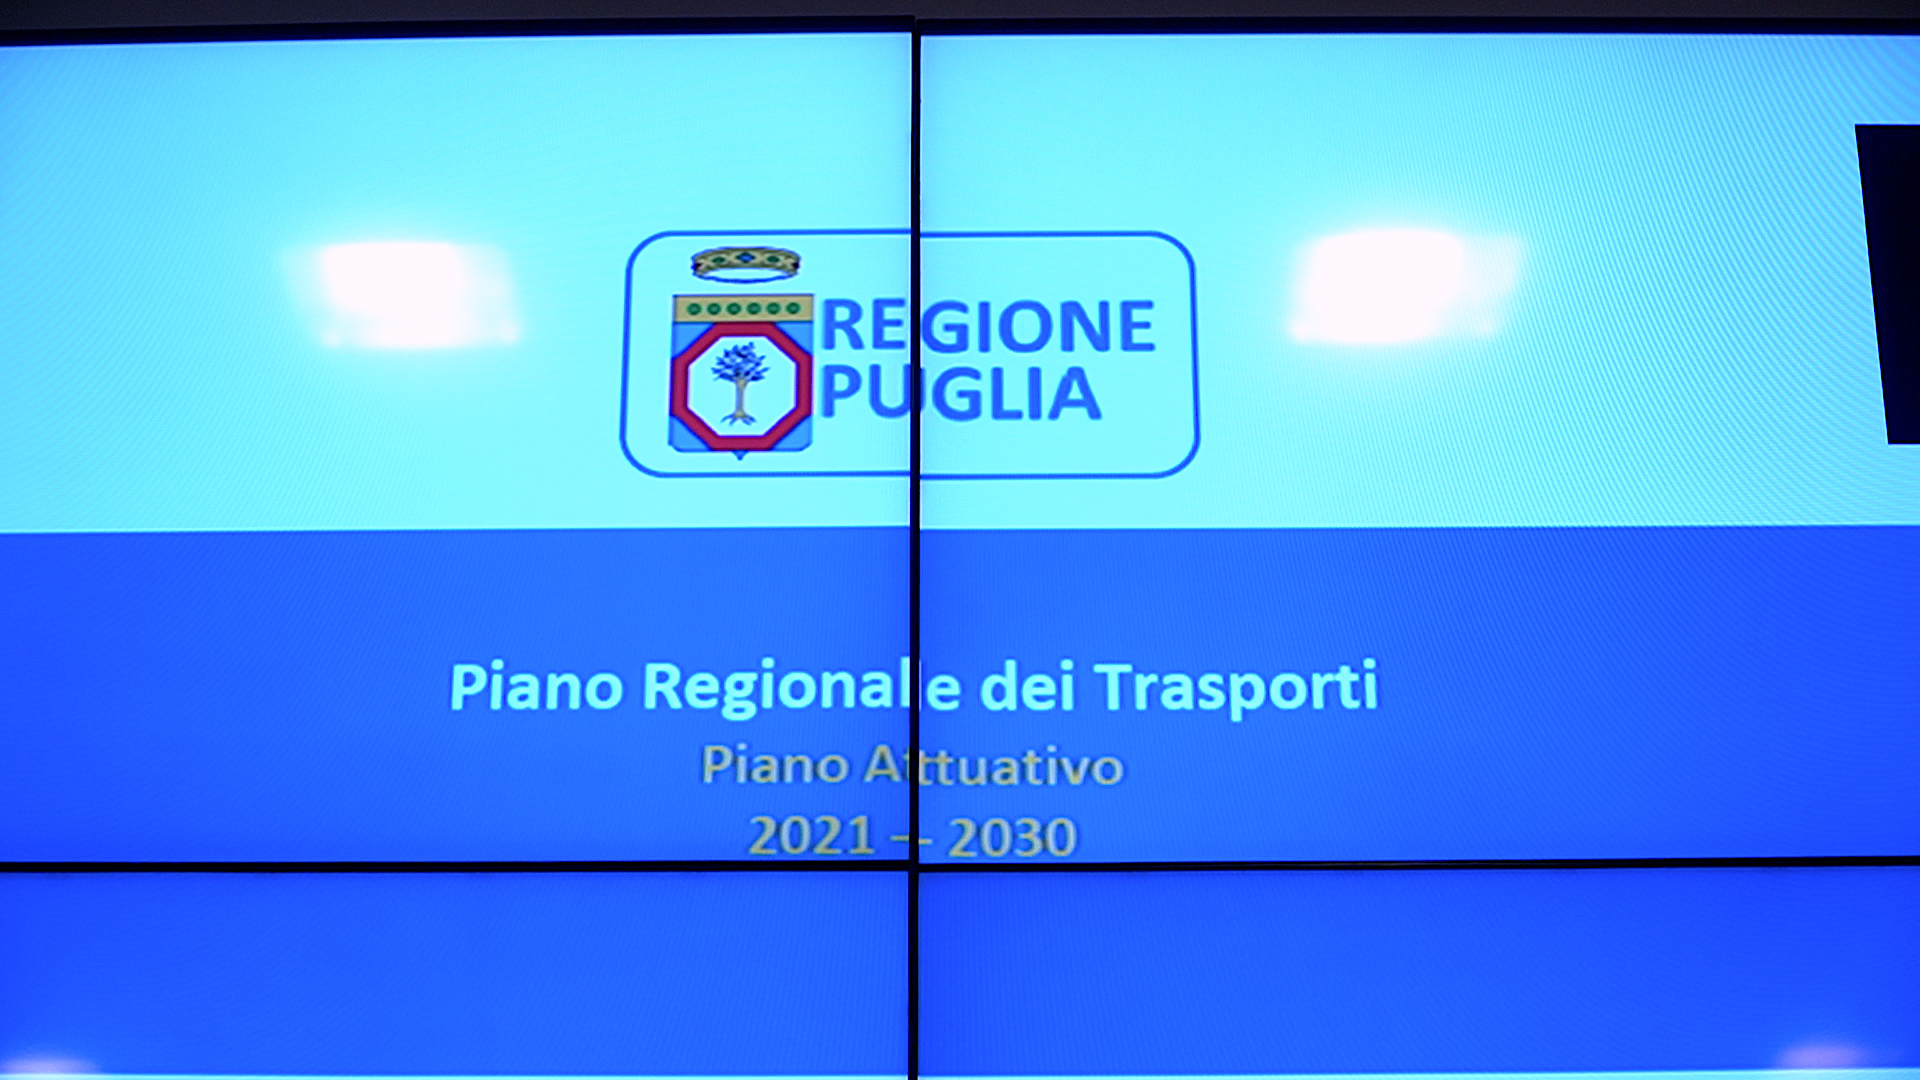 Galleria Presentato il Piano Attuativo 2021-2030 del Piano Regionale dei Trasporti: un lavoro complesso per ridisegnare la rete di trasporto regionale - Diapositiva 6 di 7